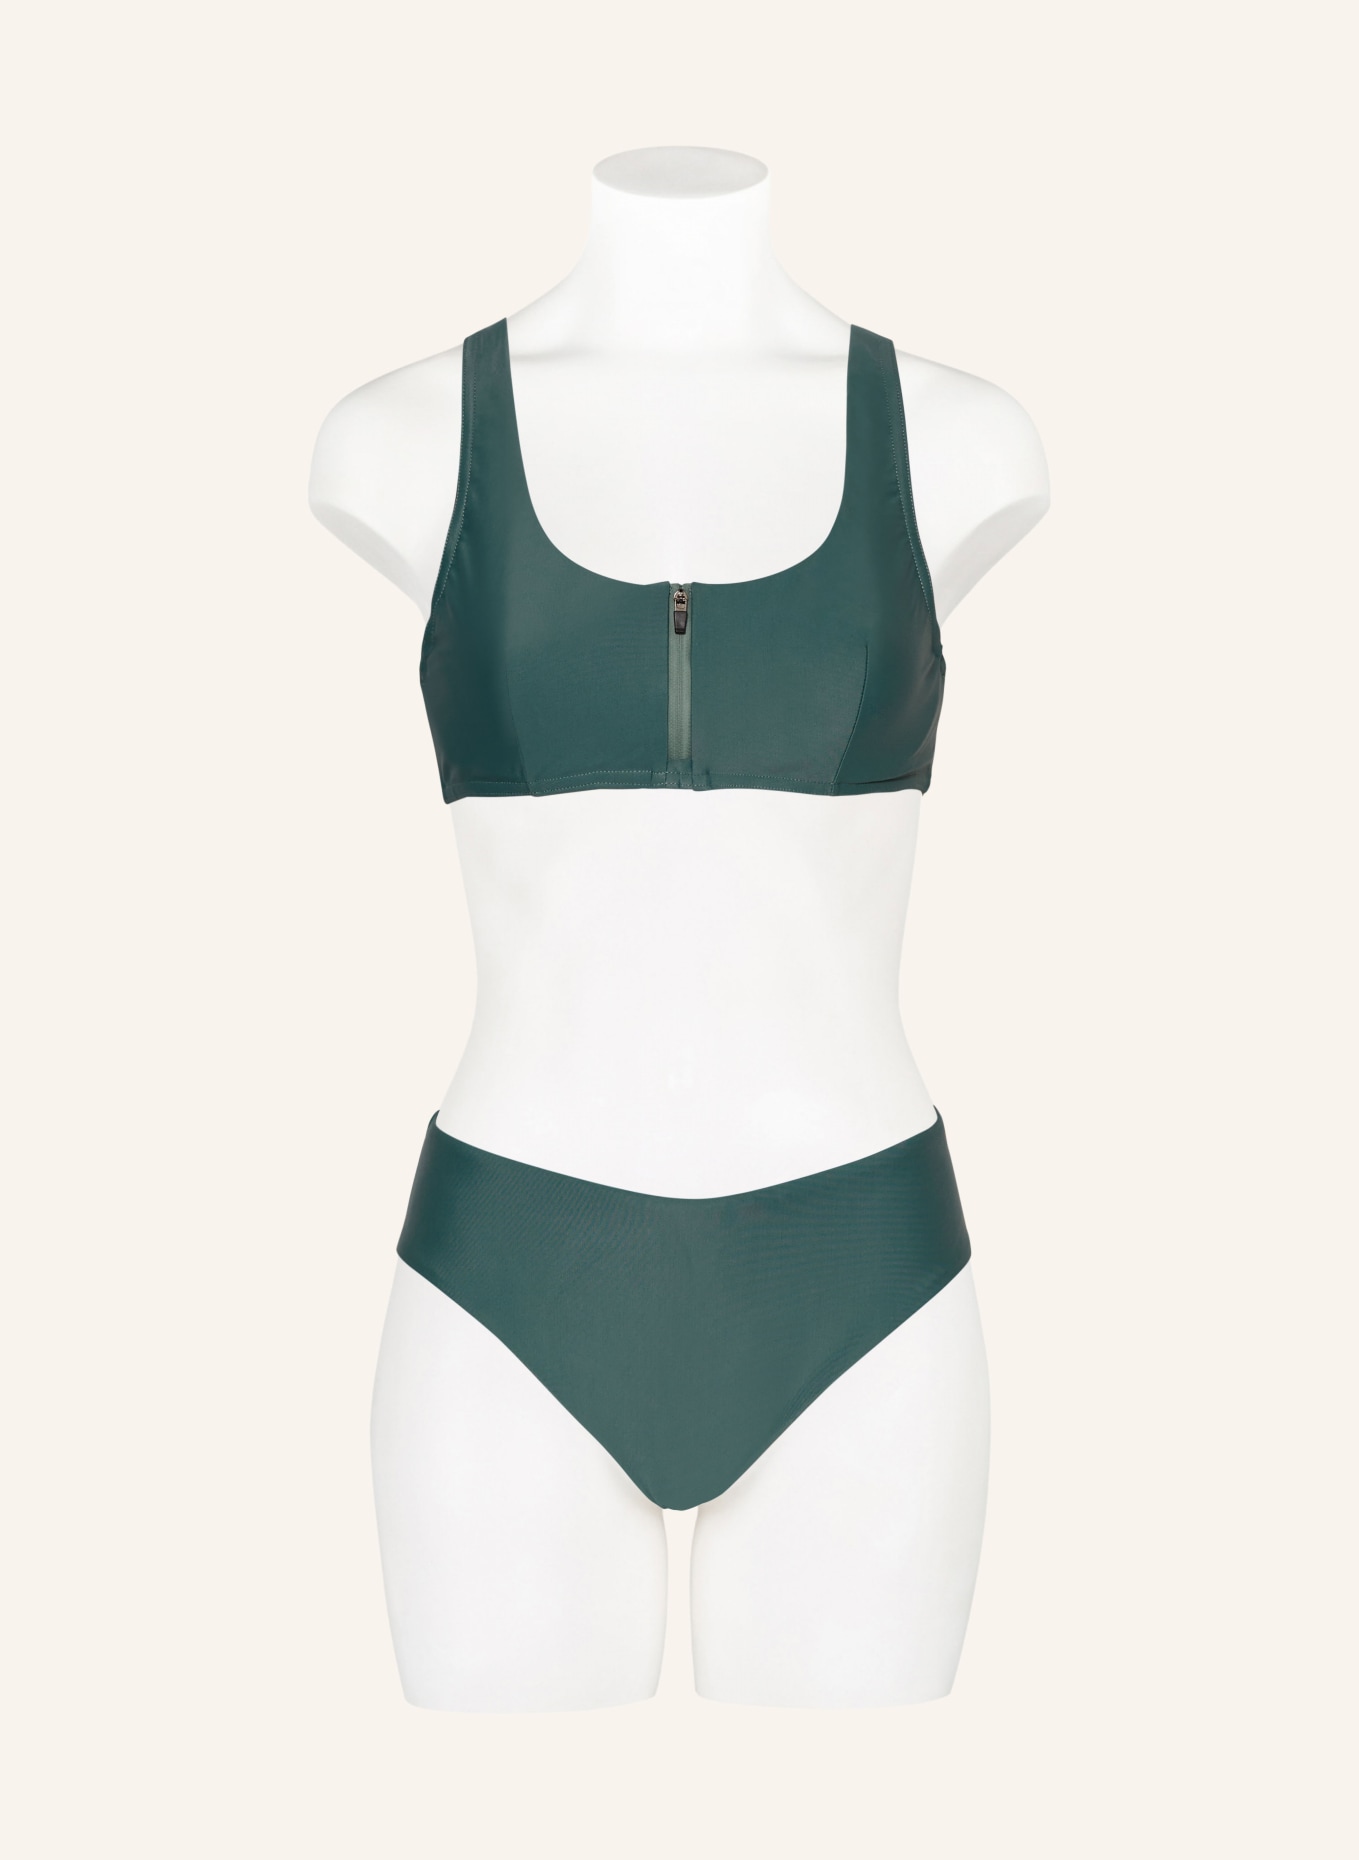 PICTURE Basic bikini bottoms SOROYA with UV protection 50+, Color: TEAL (Image 2)